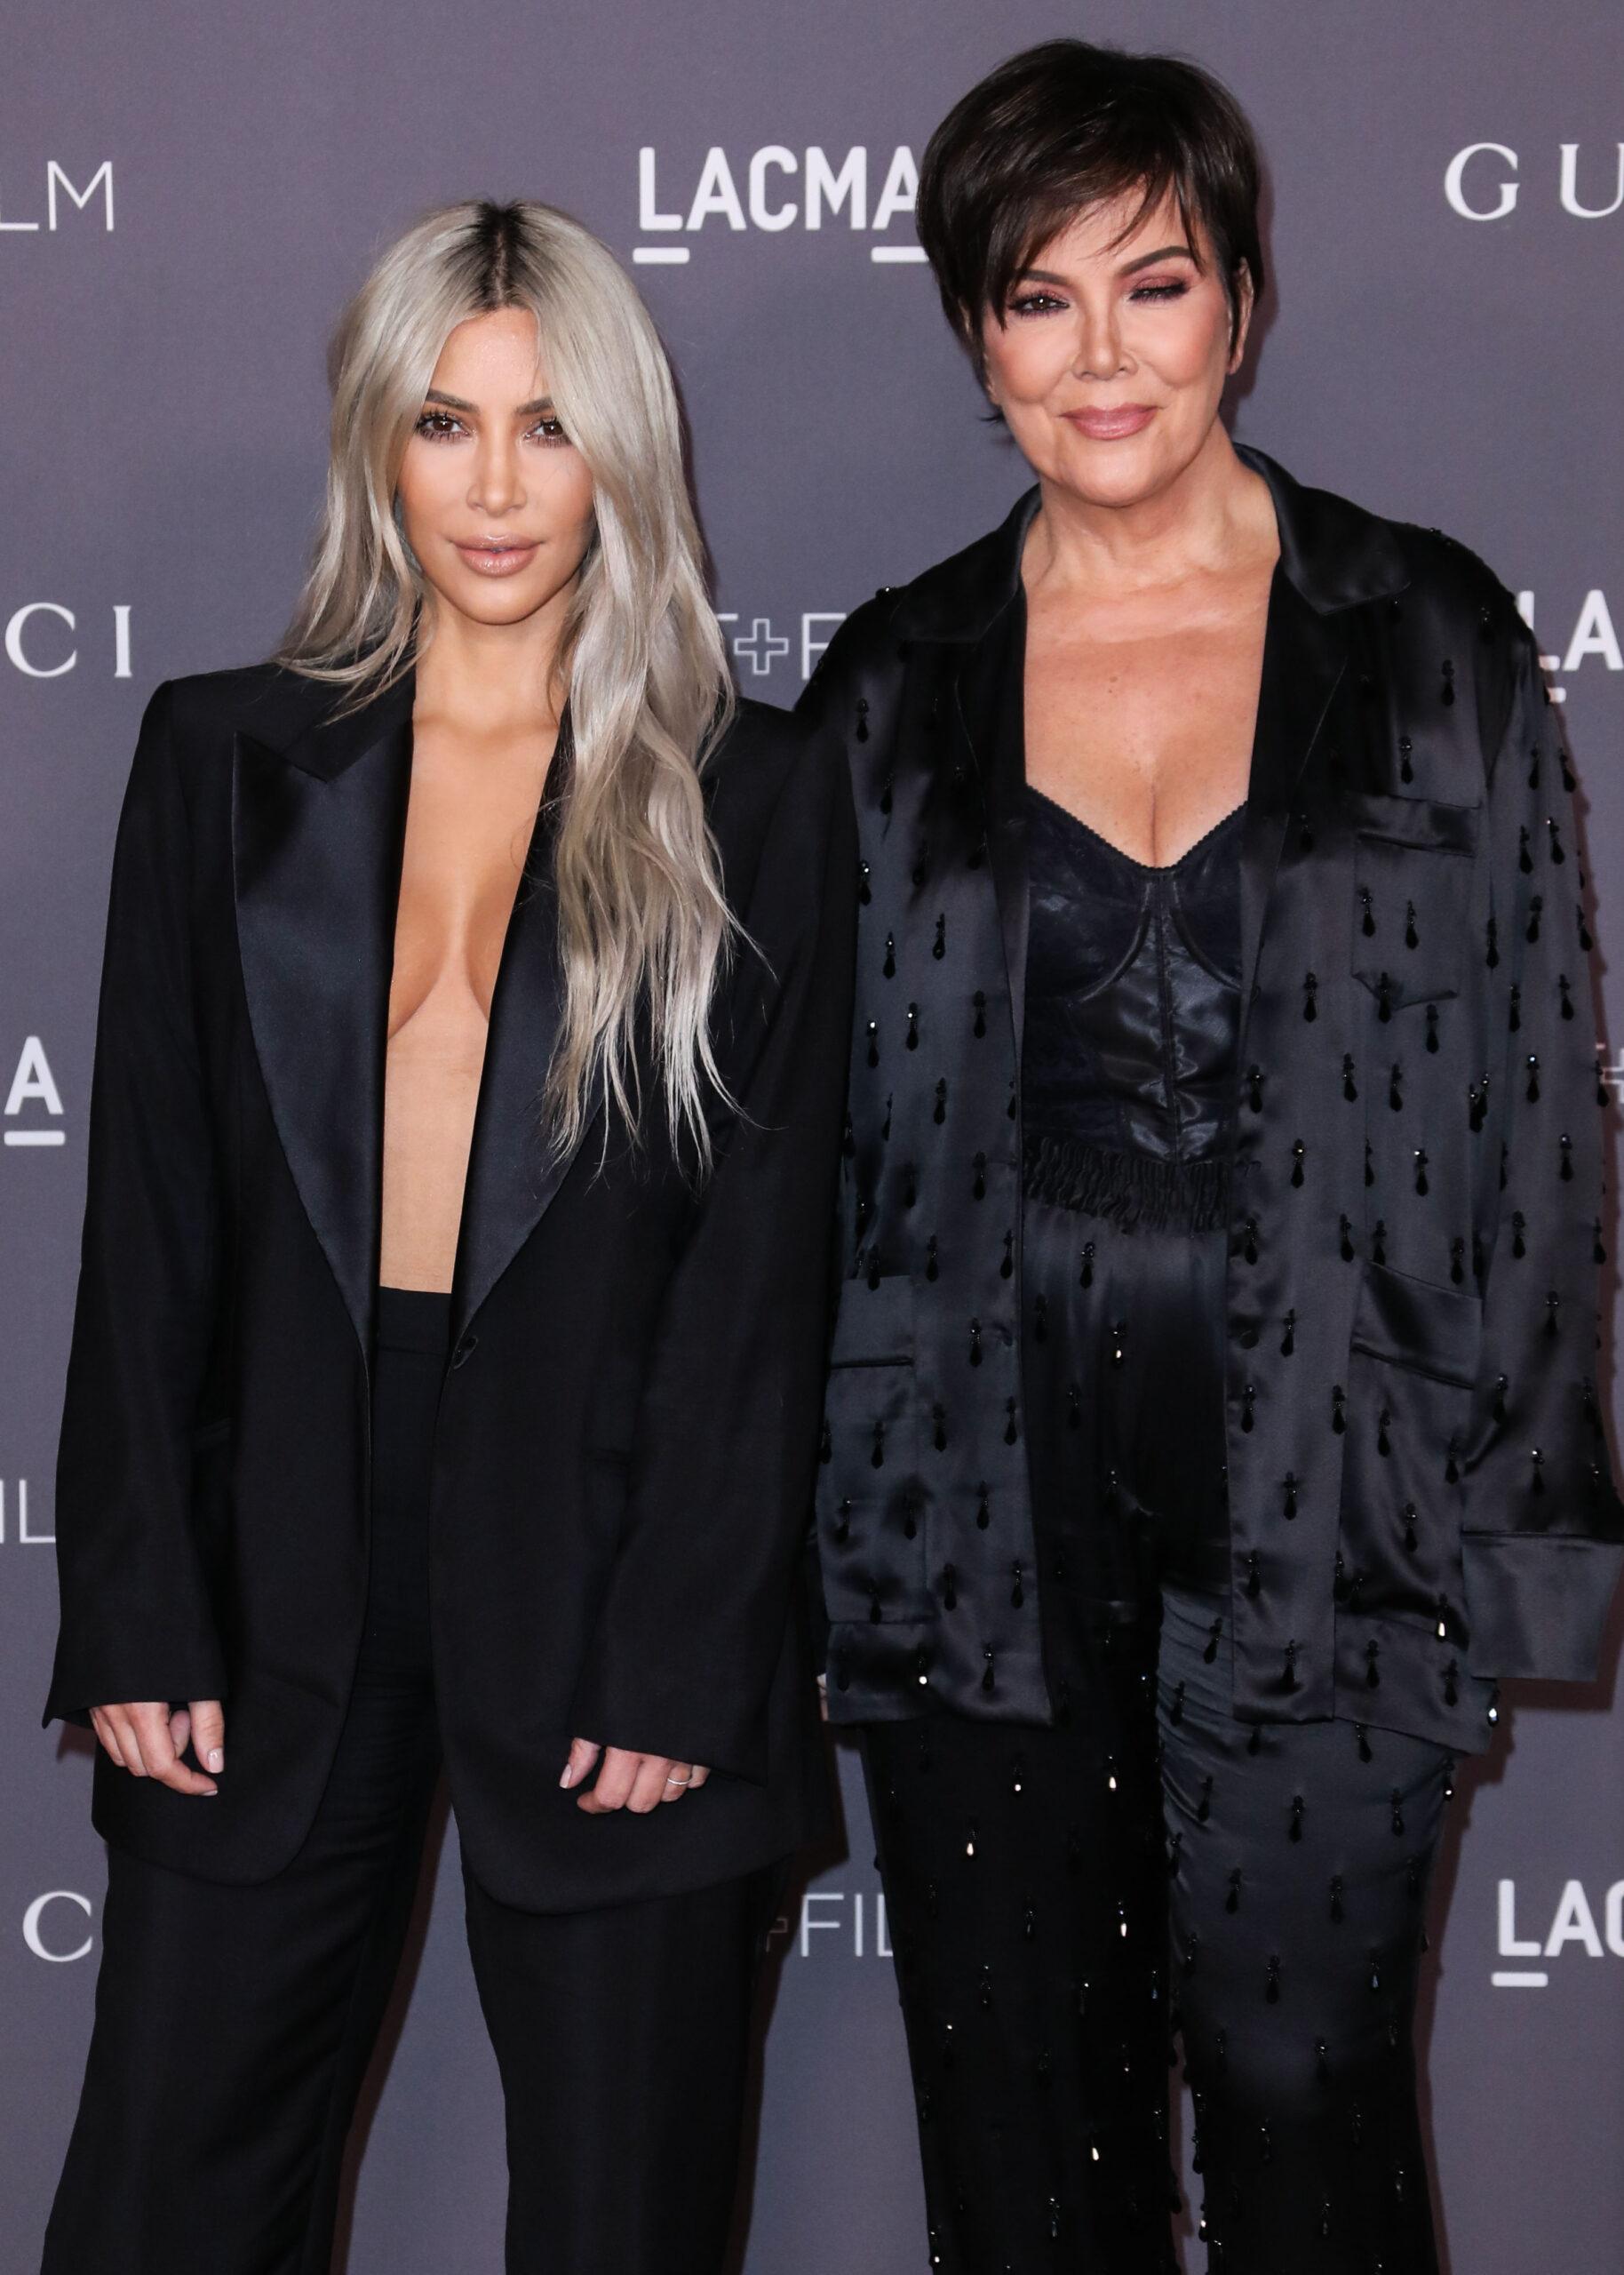 Kris Jenner and Kim Kardashian at the 2017 LACMA Art + Film Gala